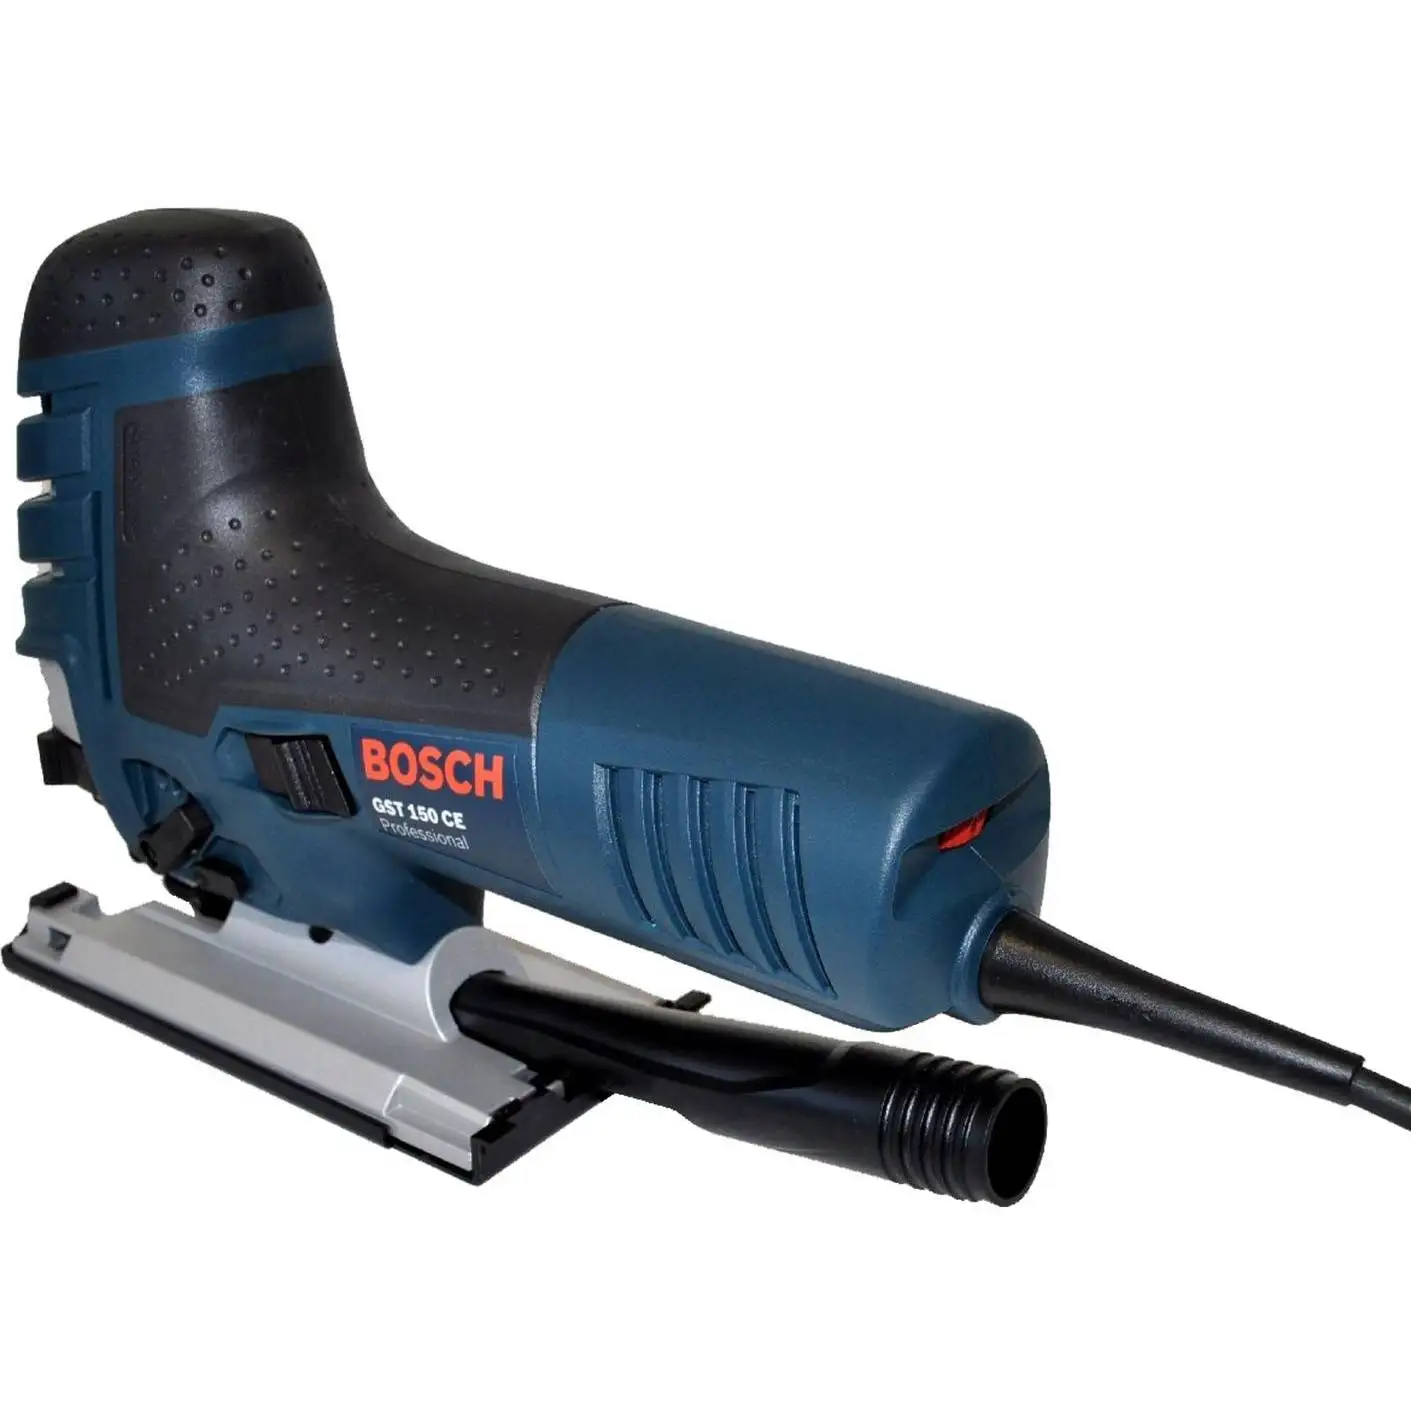 Electric jigsaw Bosch GST 150 CE (Power 780 W, 3100 stroke/min, stroke  26mm, ces)|Electric Saws| - AliExpress